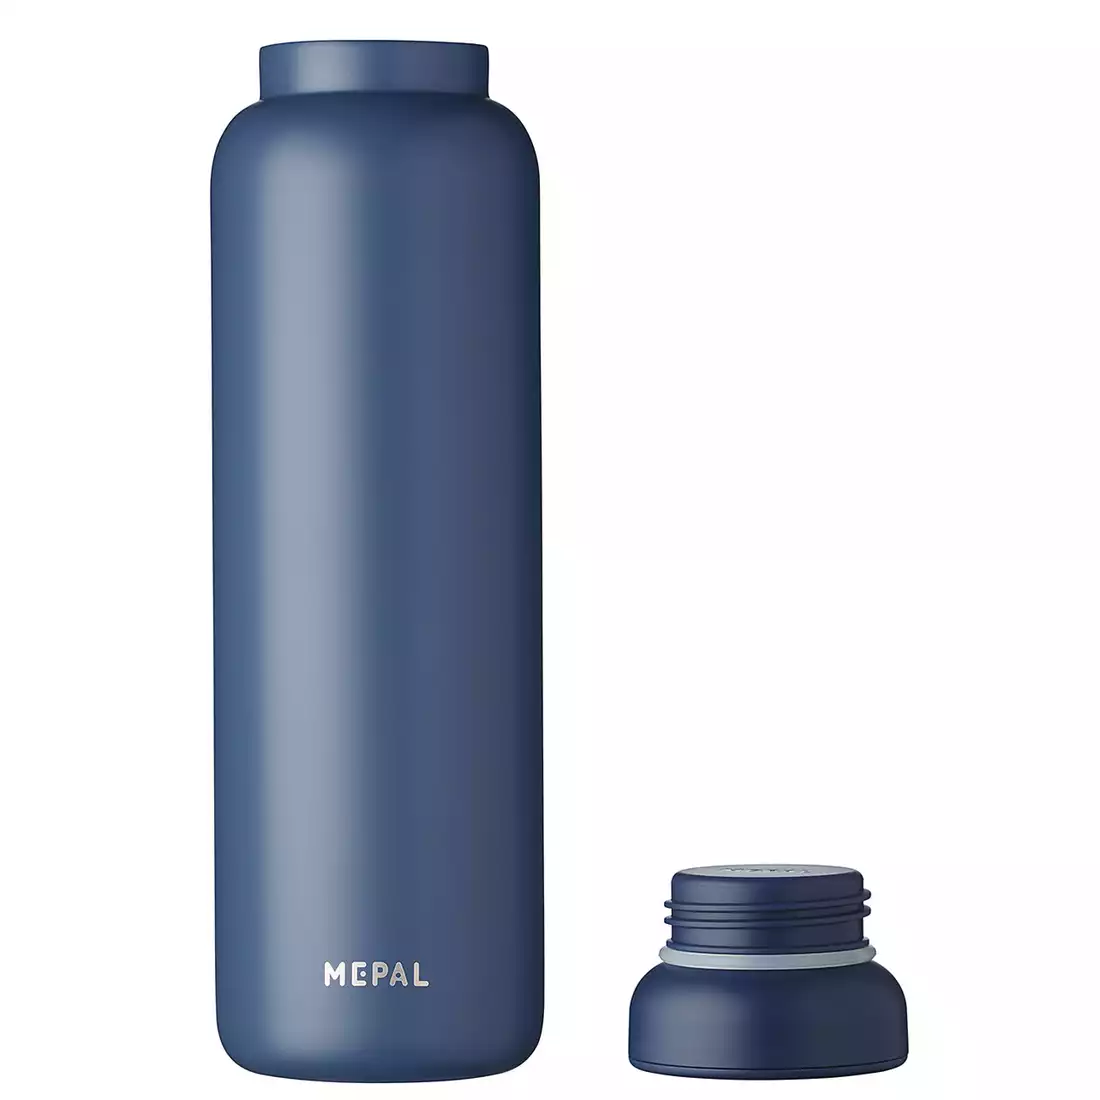 MEPAL ELLIPSE thermoflasche 900 ml, nordischer denim